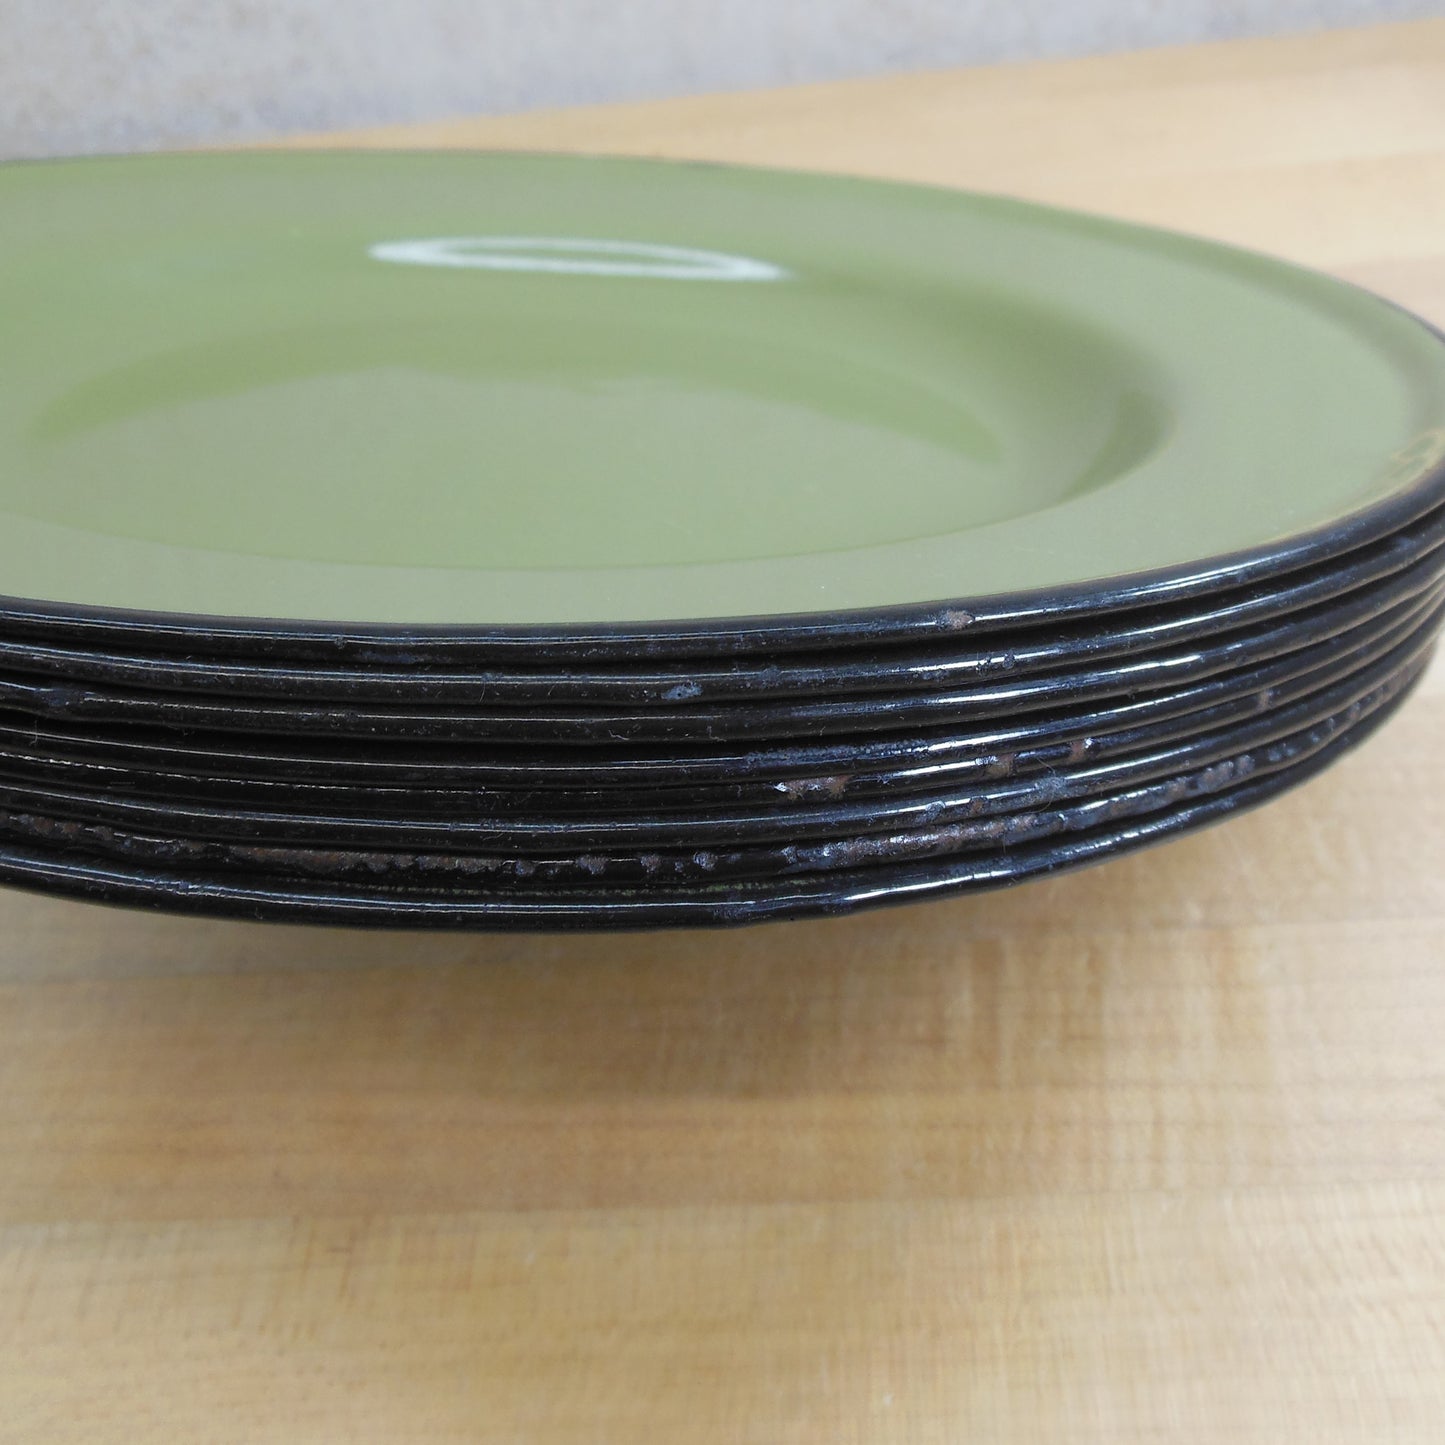 Huta Silesia Poland Avocado Green Enamelware 10" Dinner Plates - 8 Set Black Rims